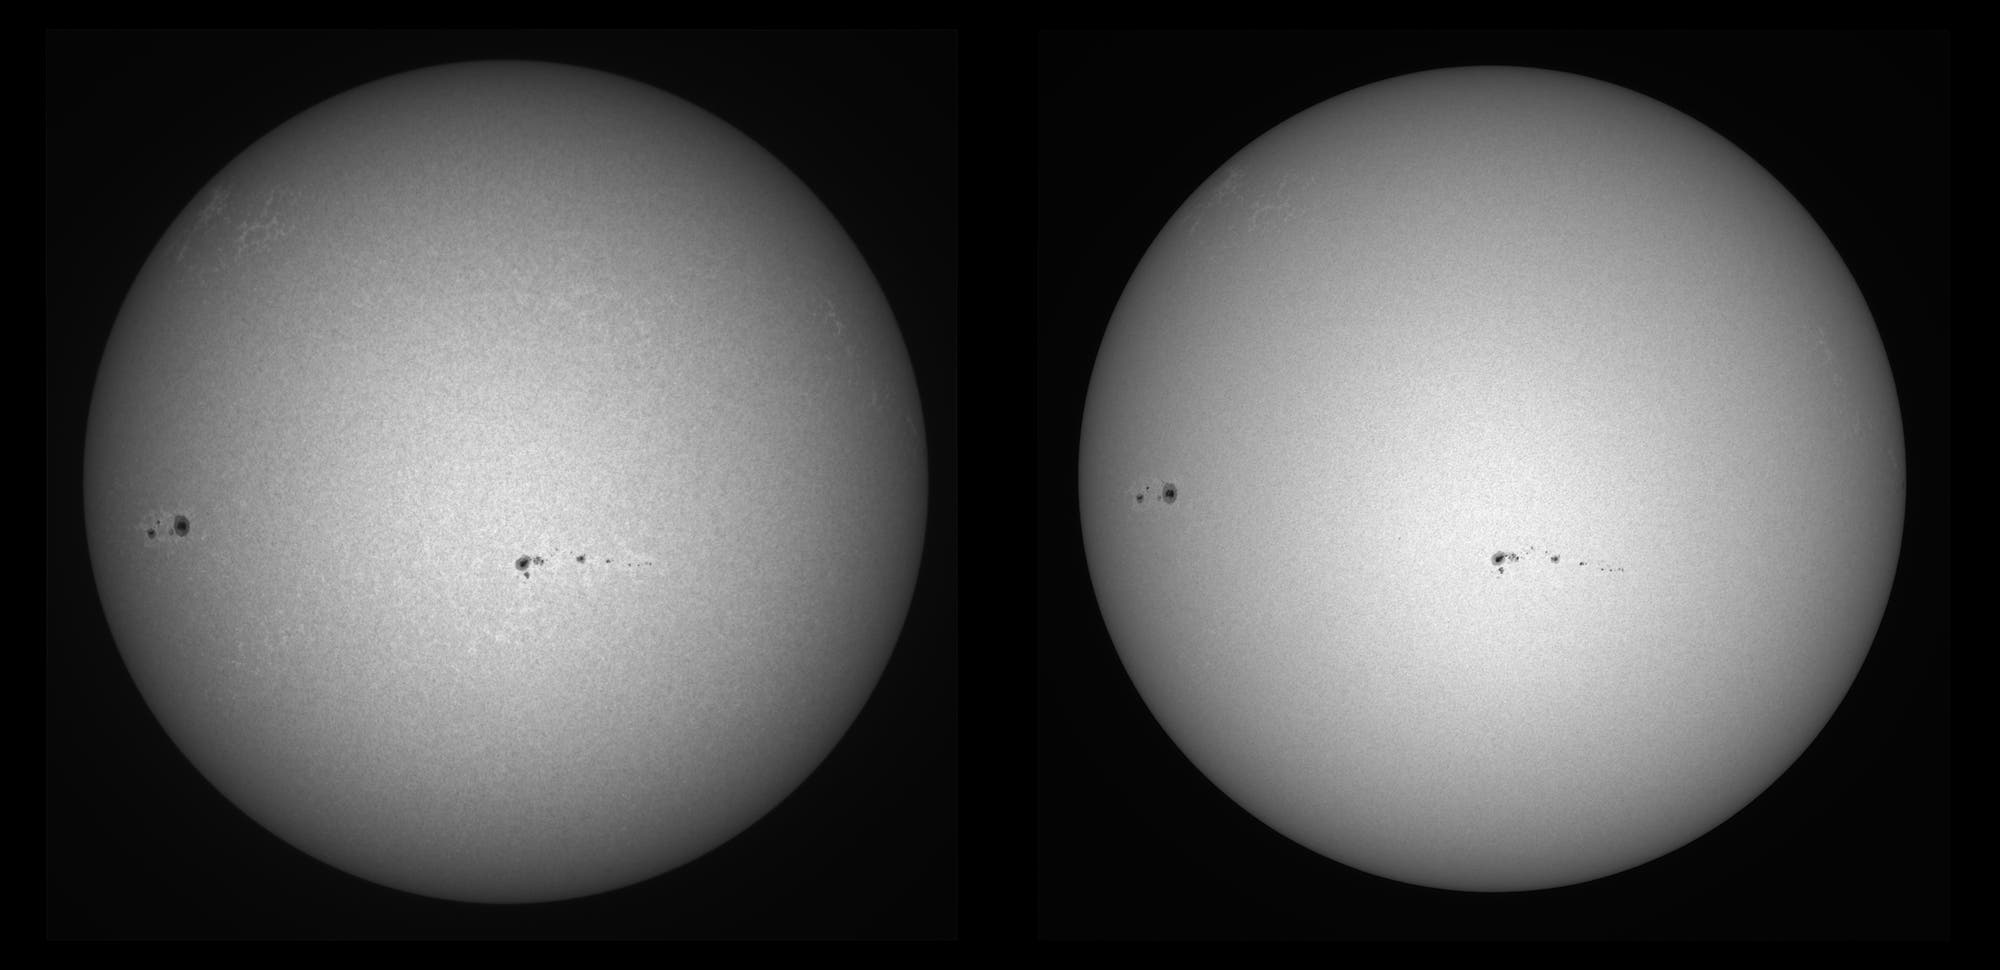 Vergleich der Sonne aufgenommen im UV und Weißlicht am 5. März 2022